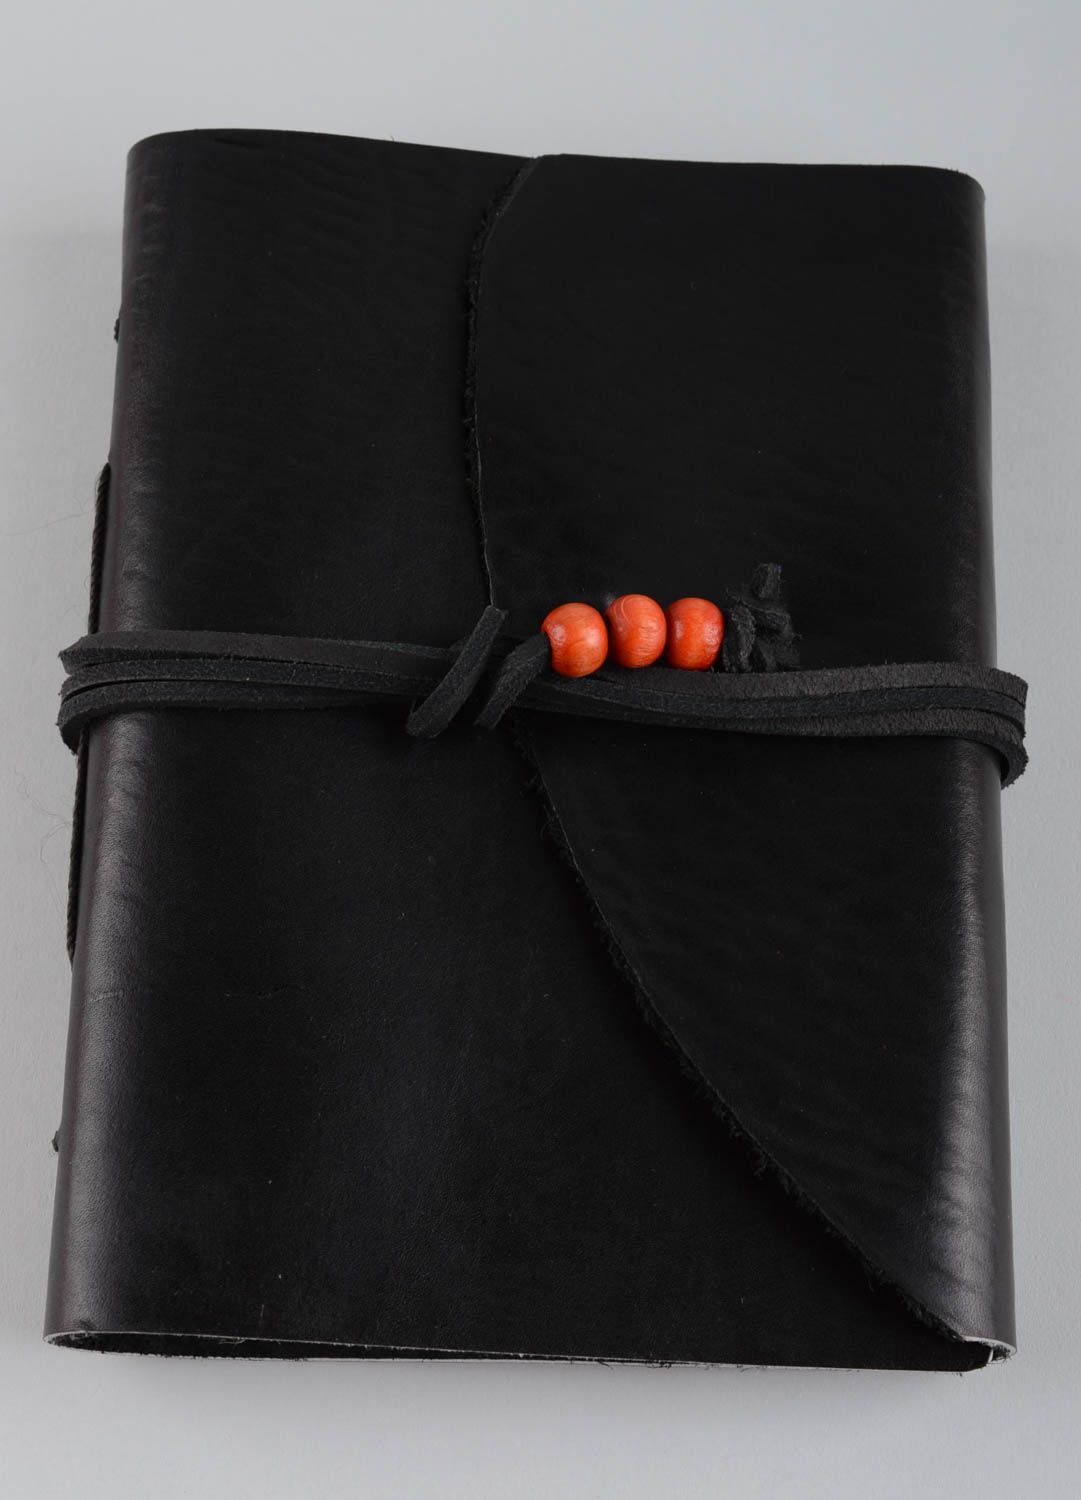 Notizbuch Leder handmade Geschenk für Männer Mode Accessoires in Schwarz foto 1